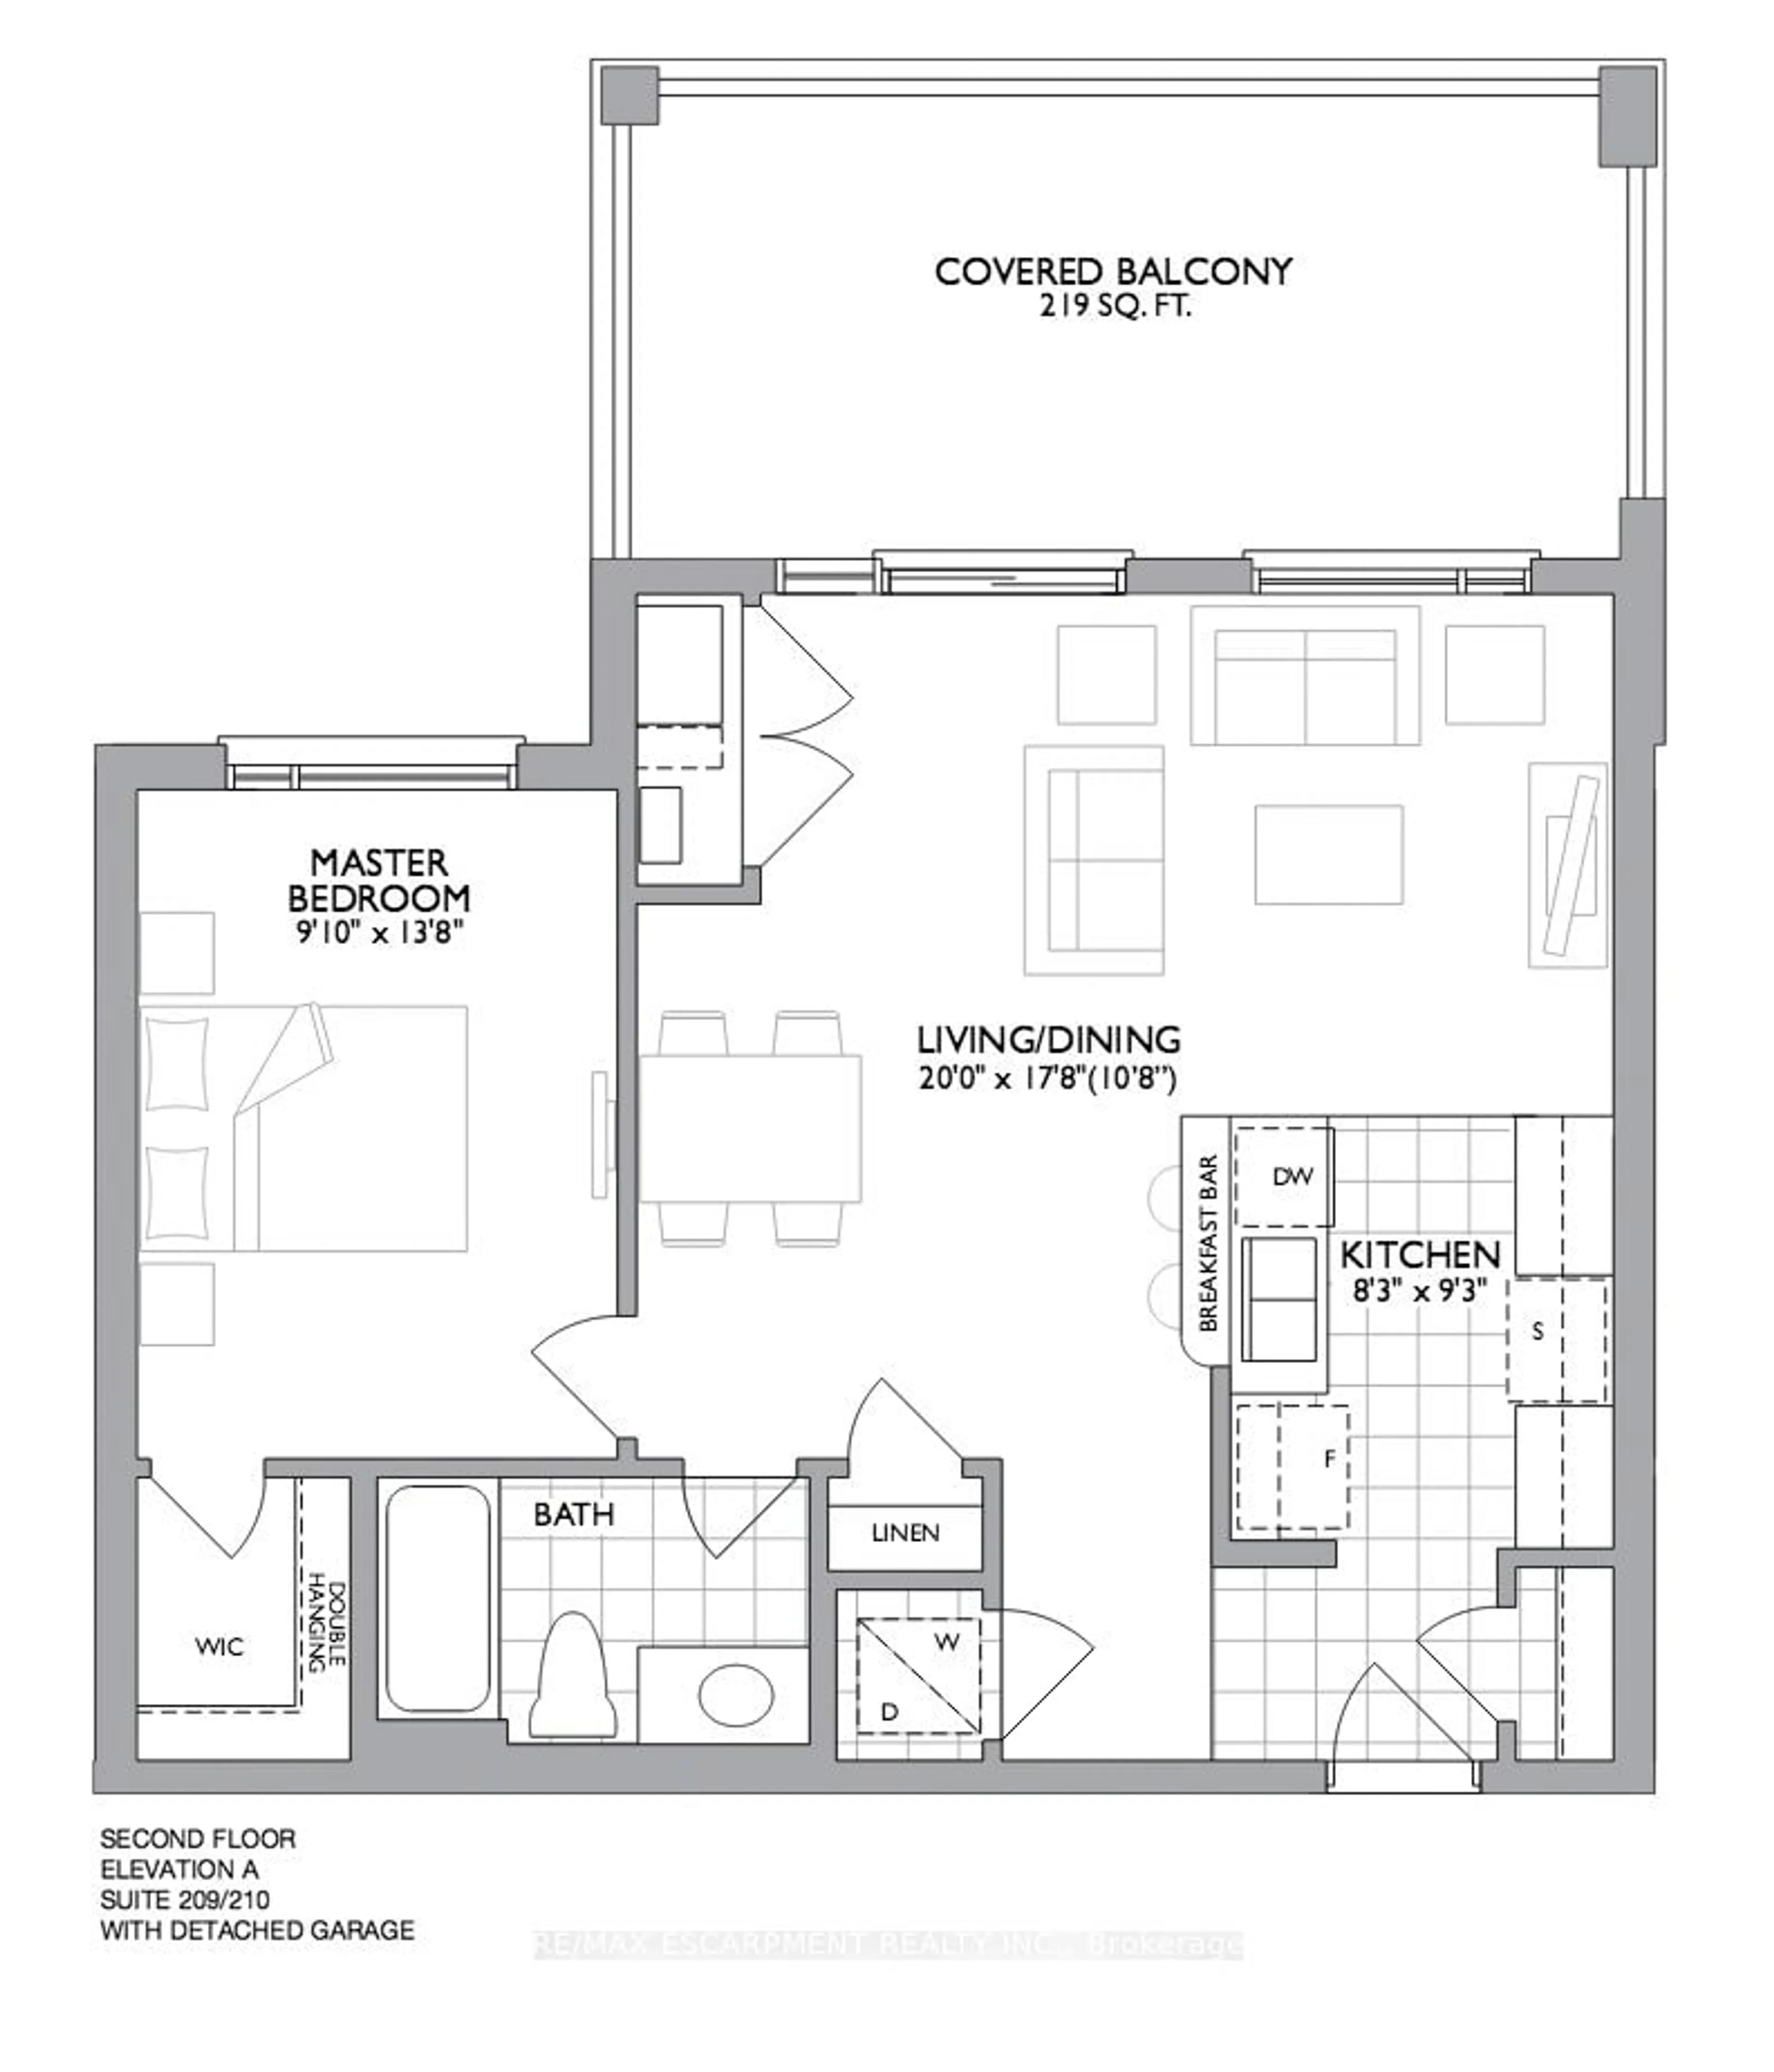 Floor plan for 2370 Khalsa Gate #209, Oakville Ontario L6M 1P5